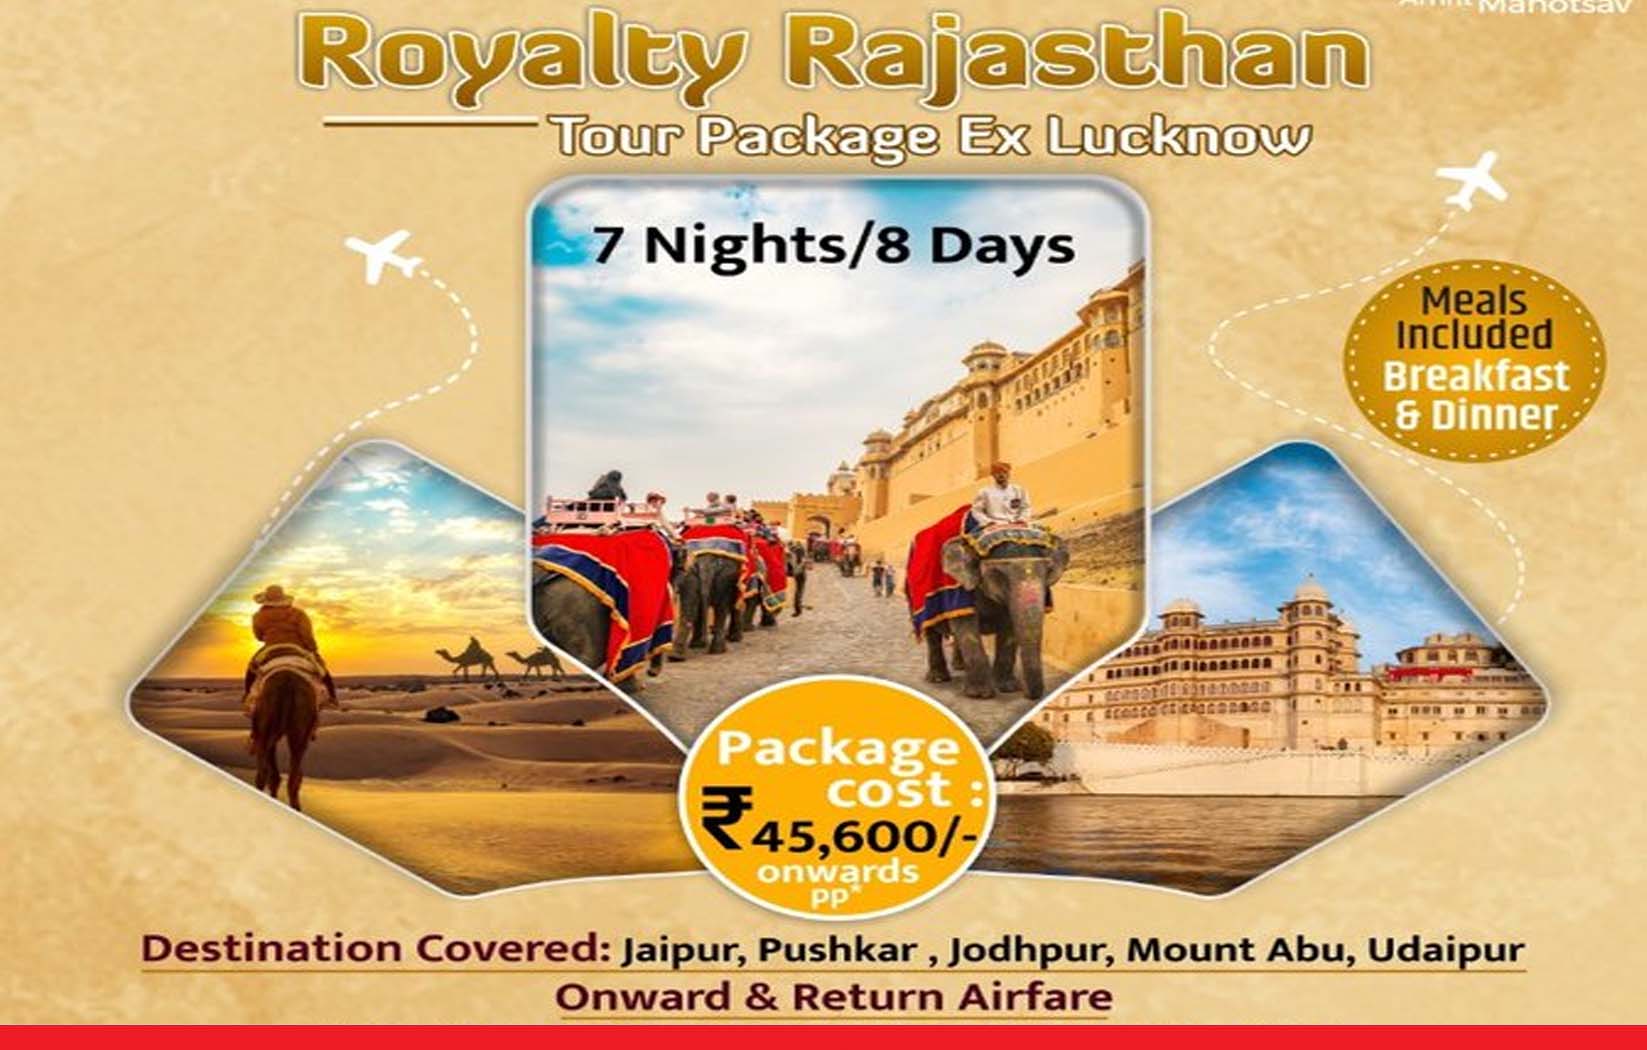 सिर्फ ₹45,600 रुपये में घूमें राजस्थान, आईआरसीटीसी लाया है खास एयर टूर पैकेज